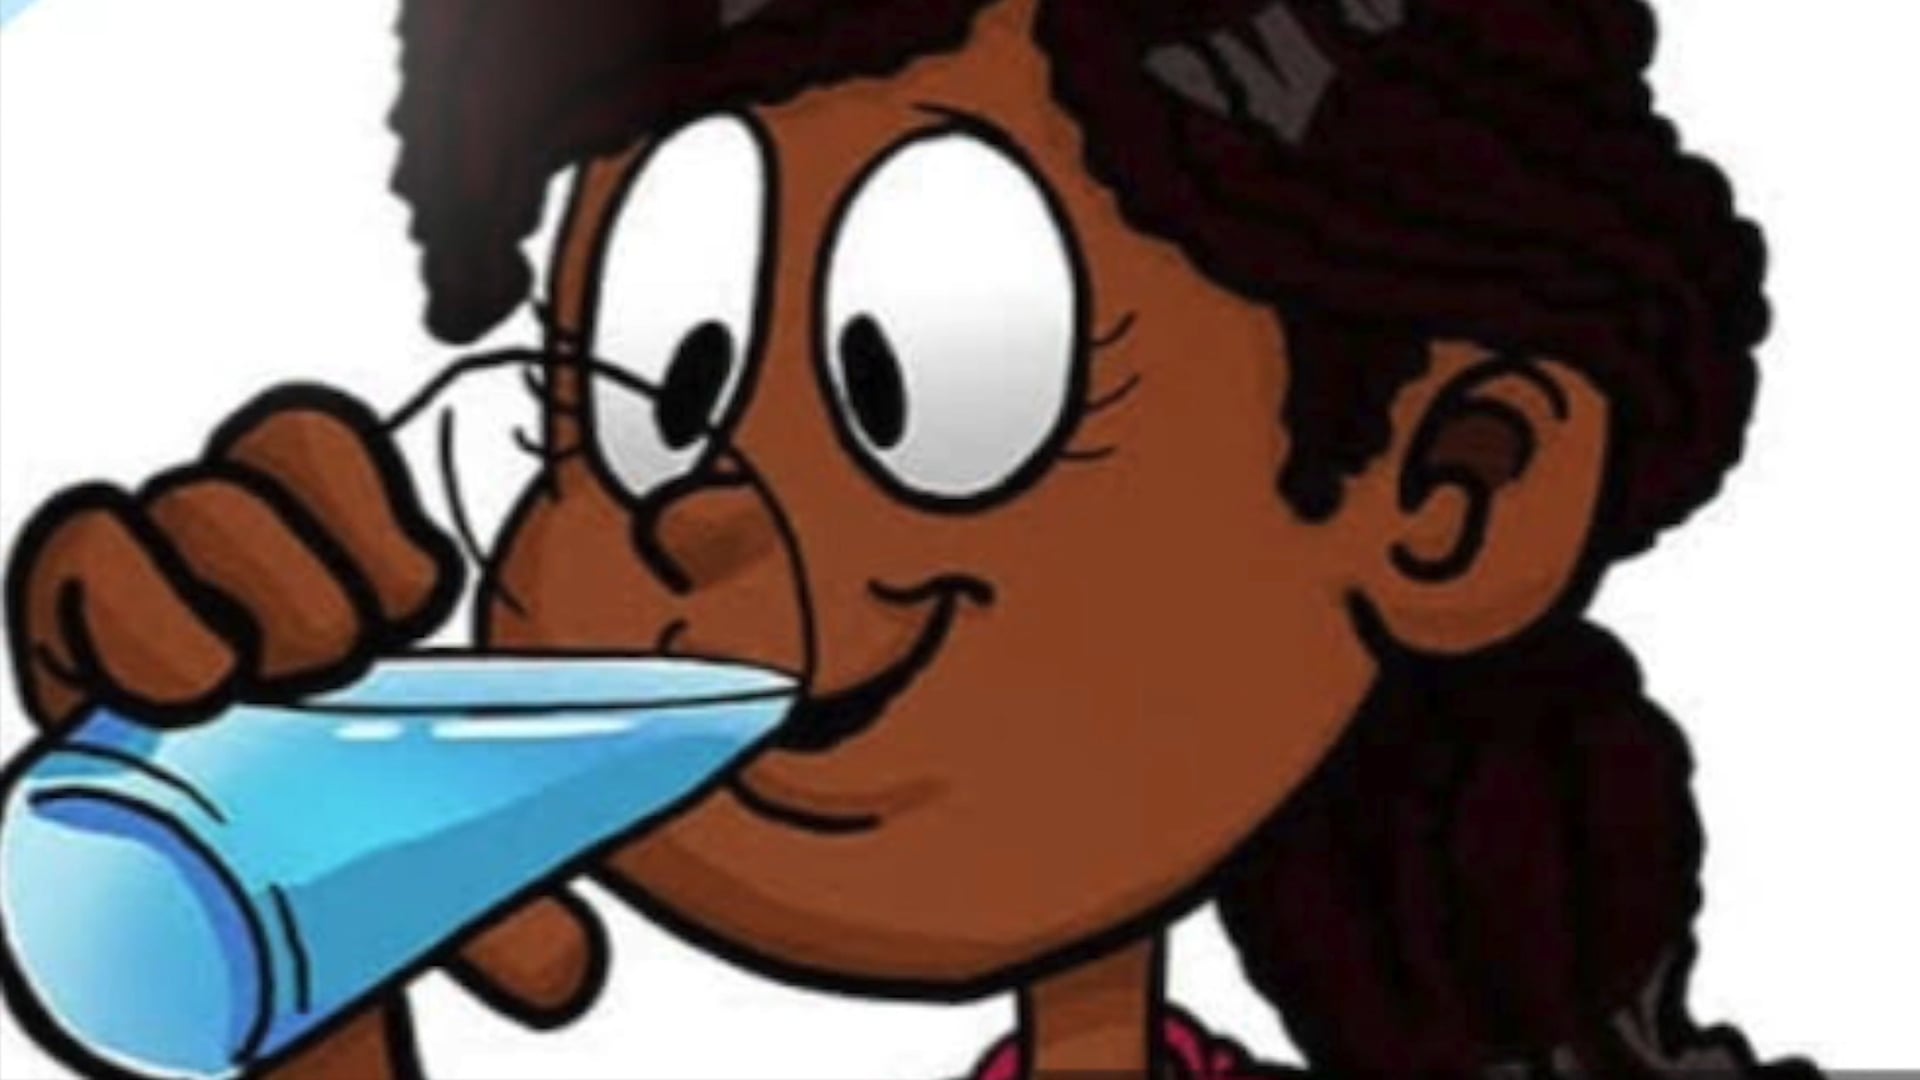 Ngoorloorloog barrem goorloom melagawoom - Drink lots of water